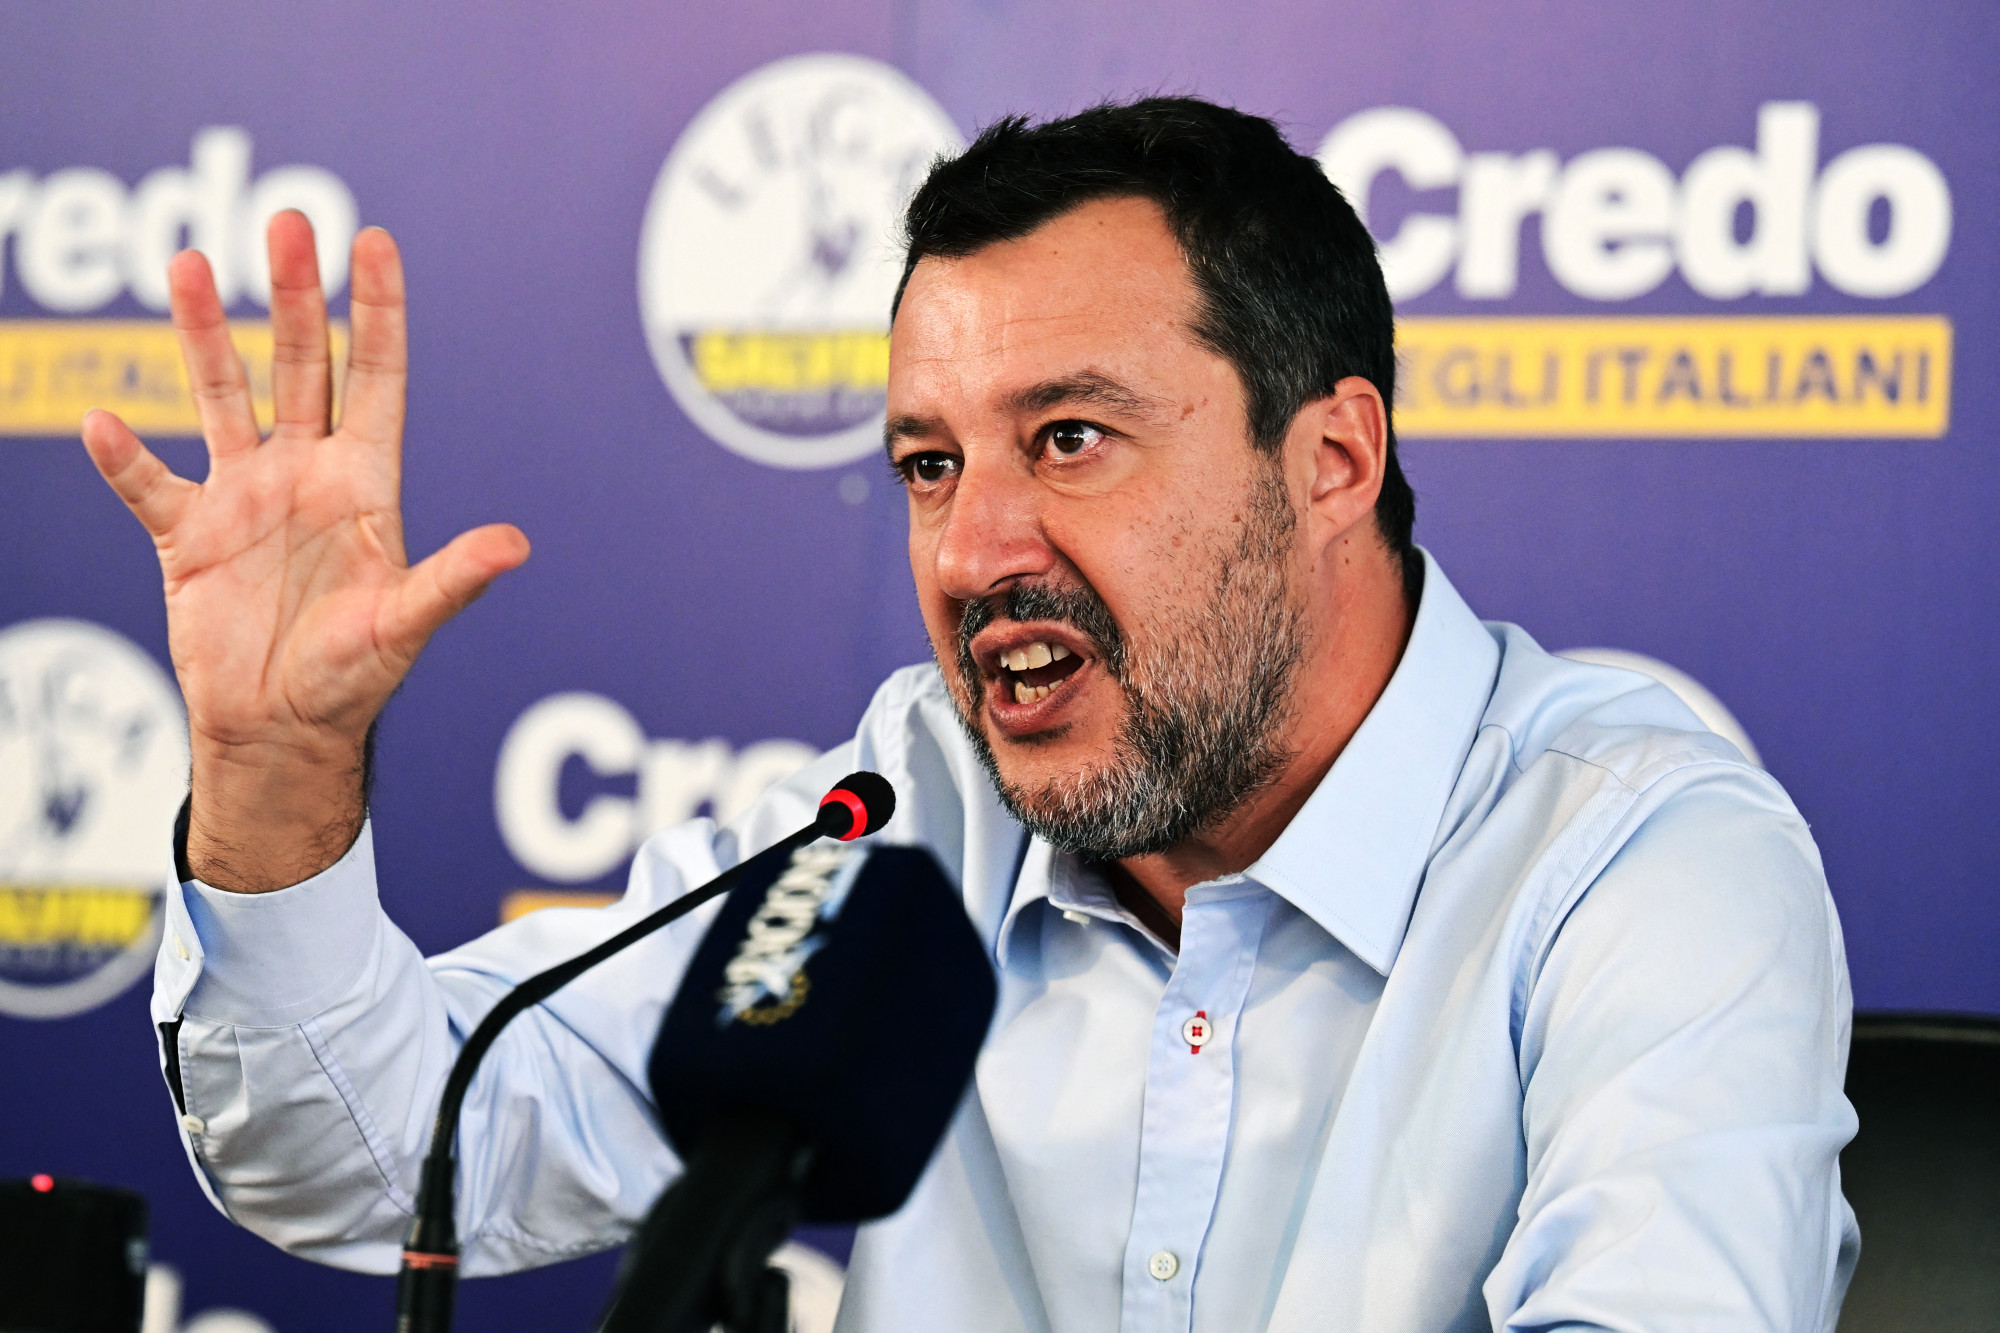 Salvini teljesen újjászervezi szélsőjobboldali pártját